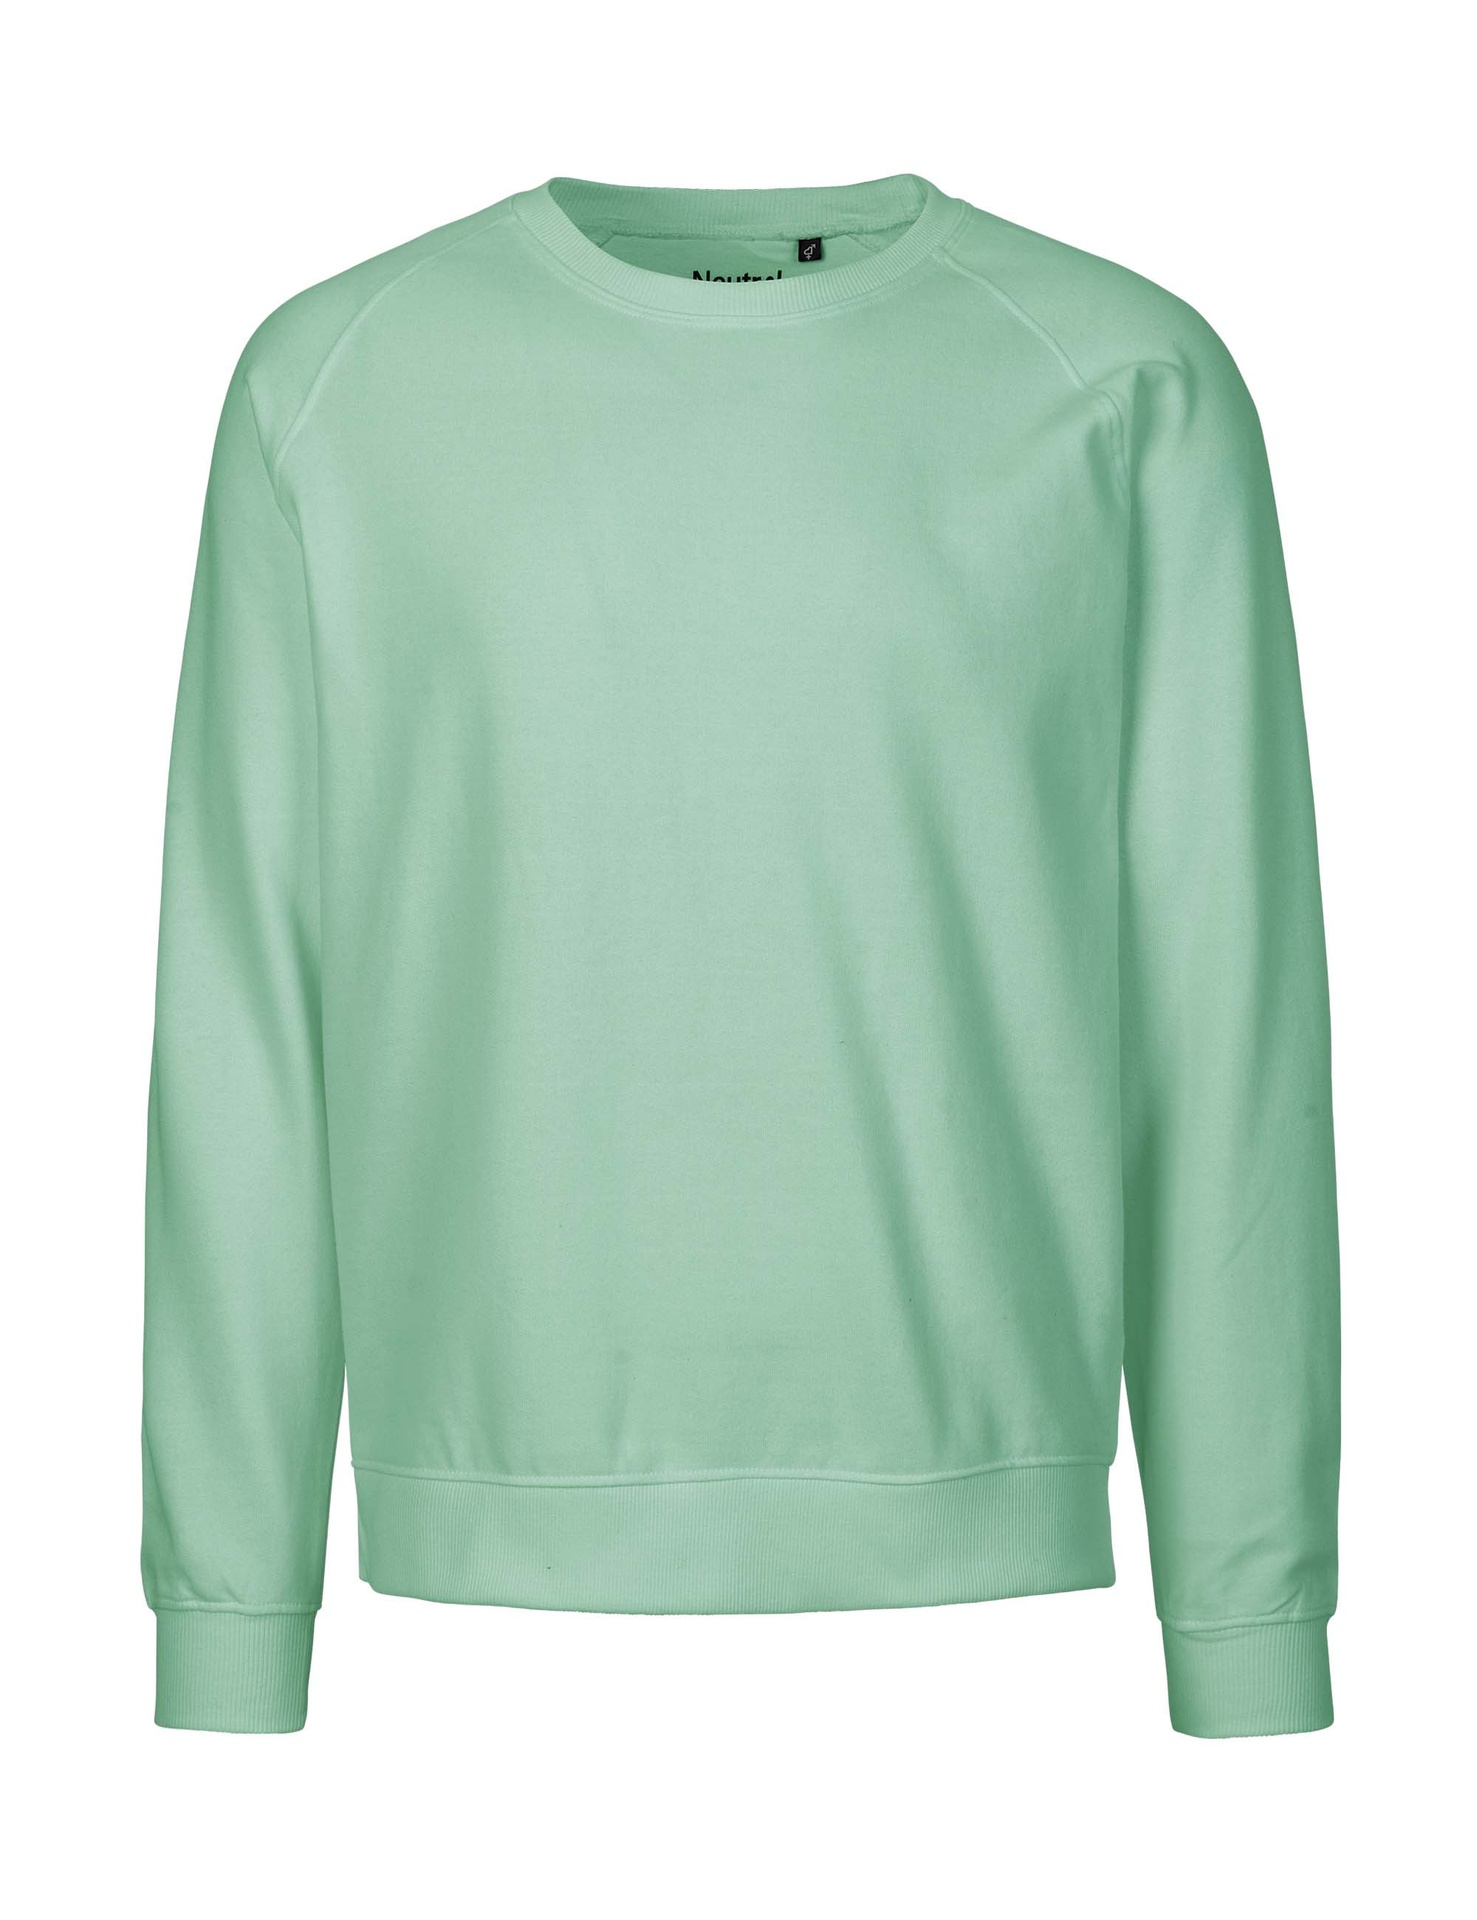 [PR/02825] Unisex Sweatshirt (Dusty Mint 40, M)